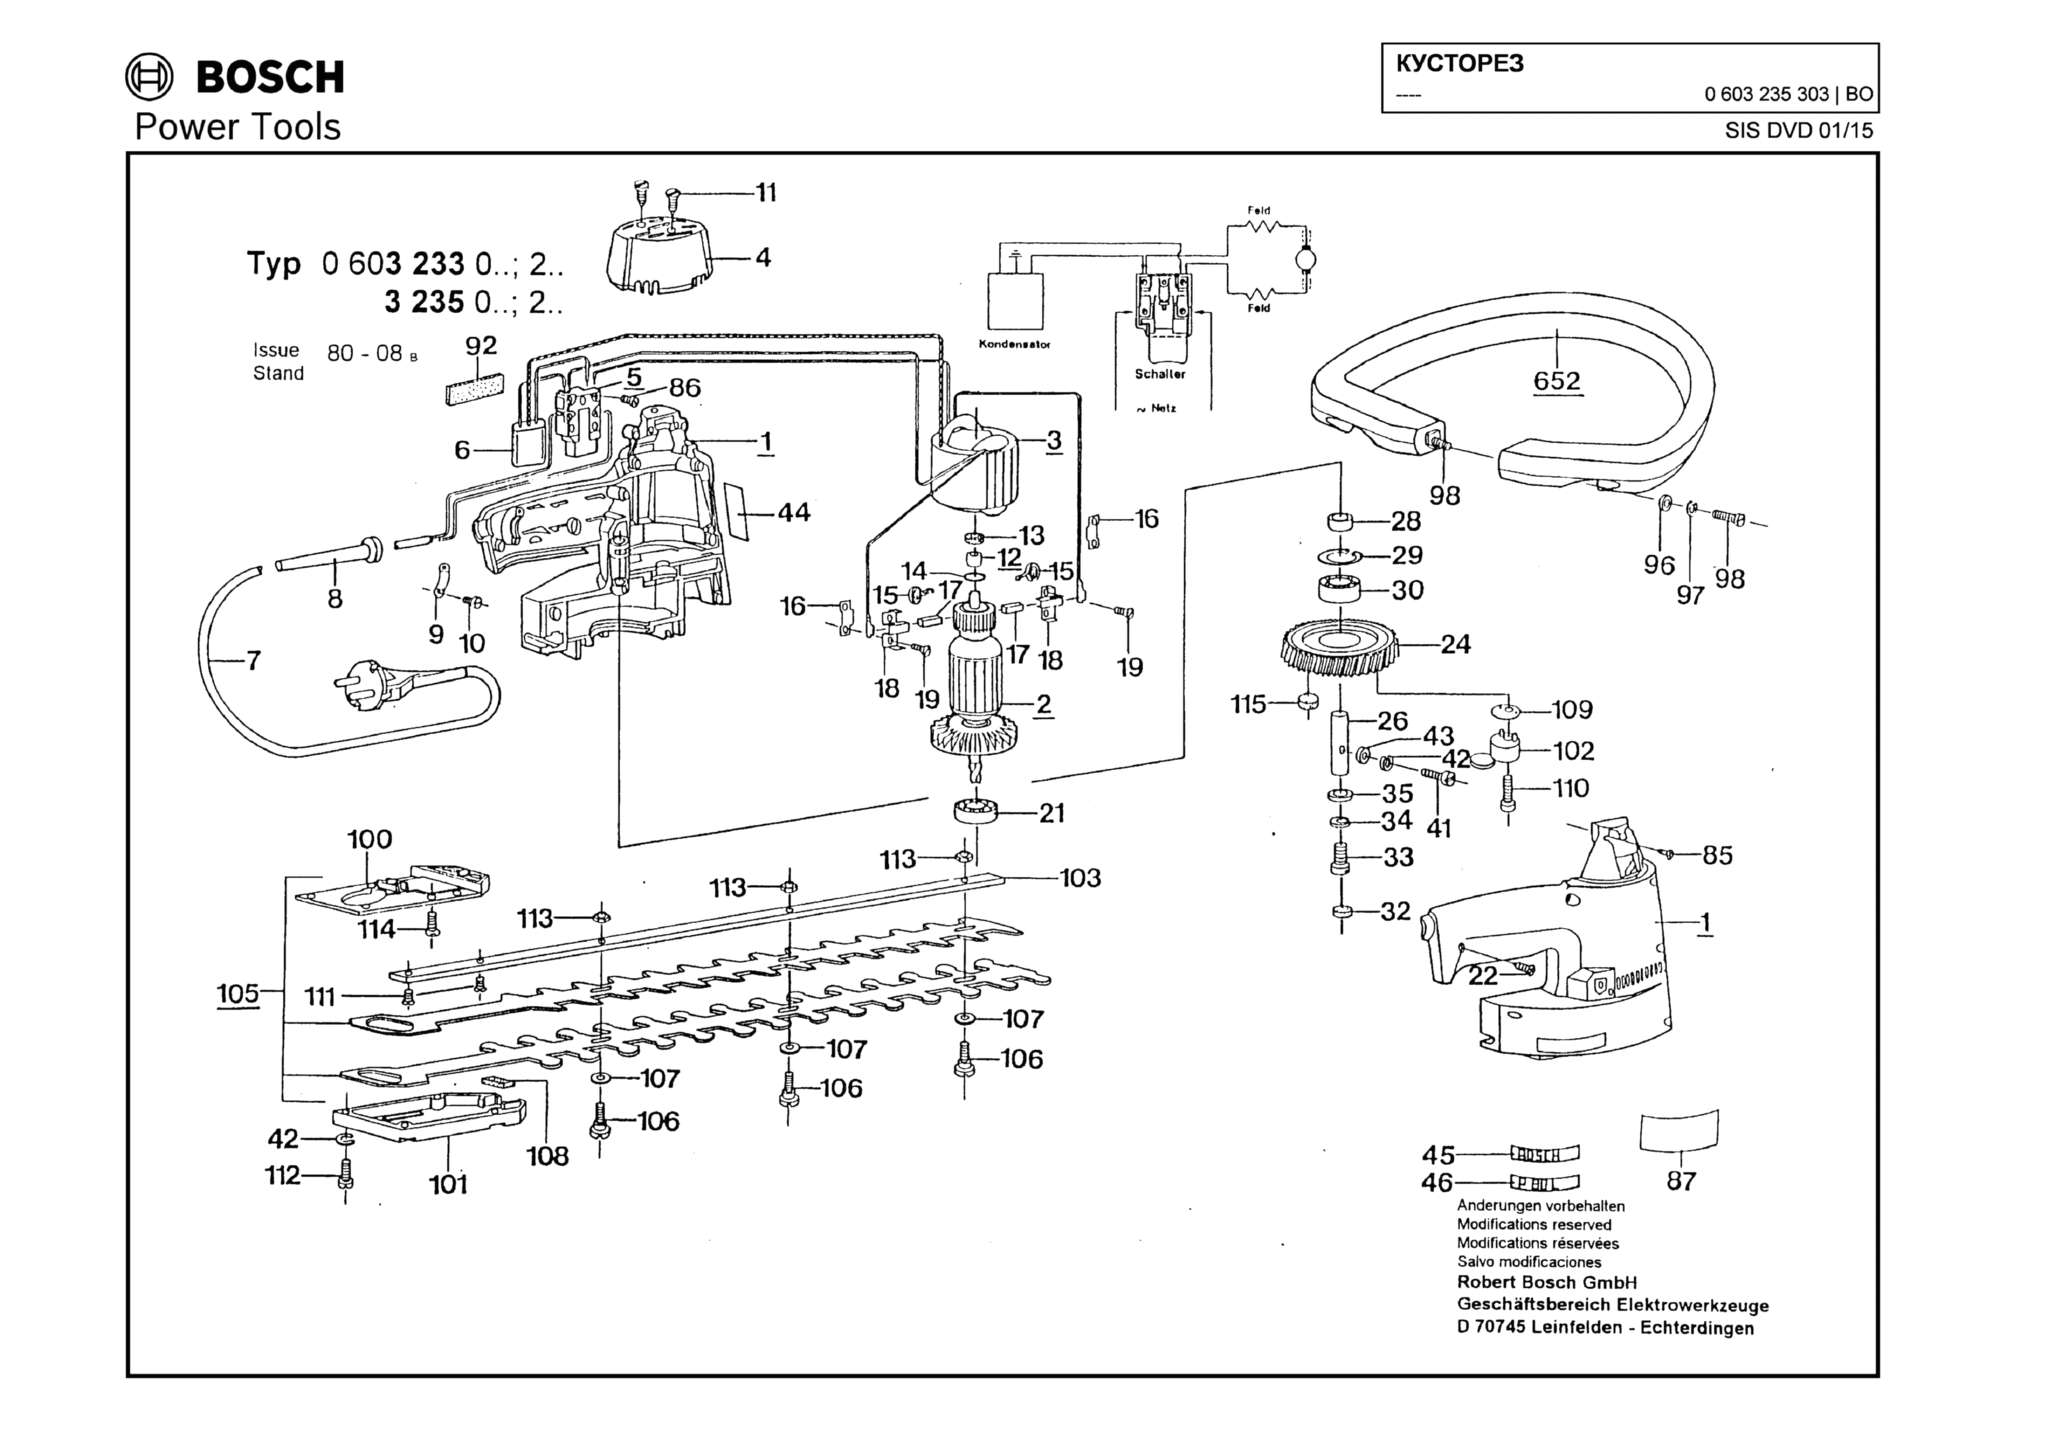 Запчасти, схема и деталировка Bosch (ТИП 0603235303)